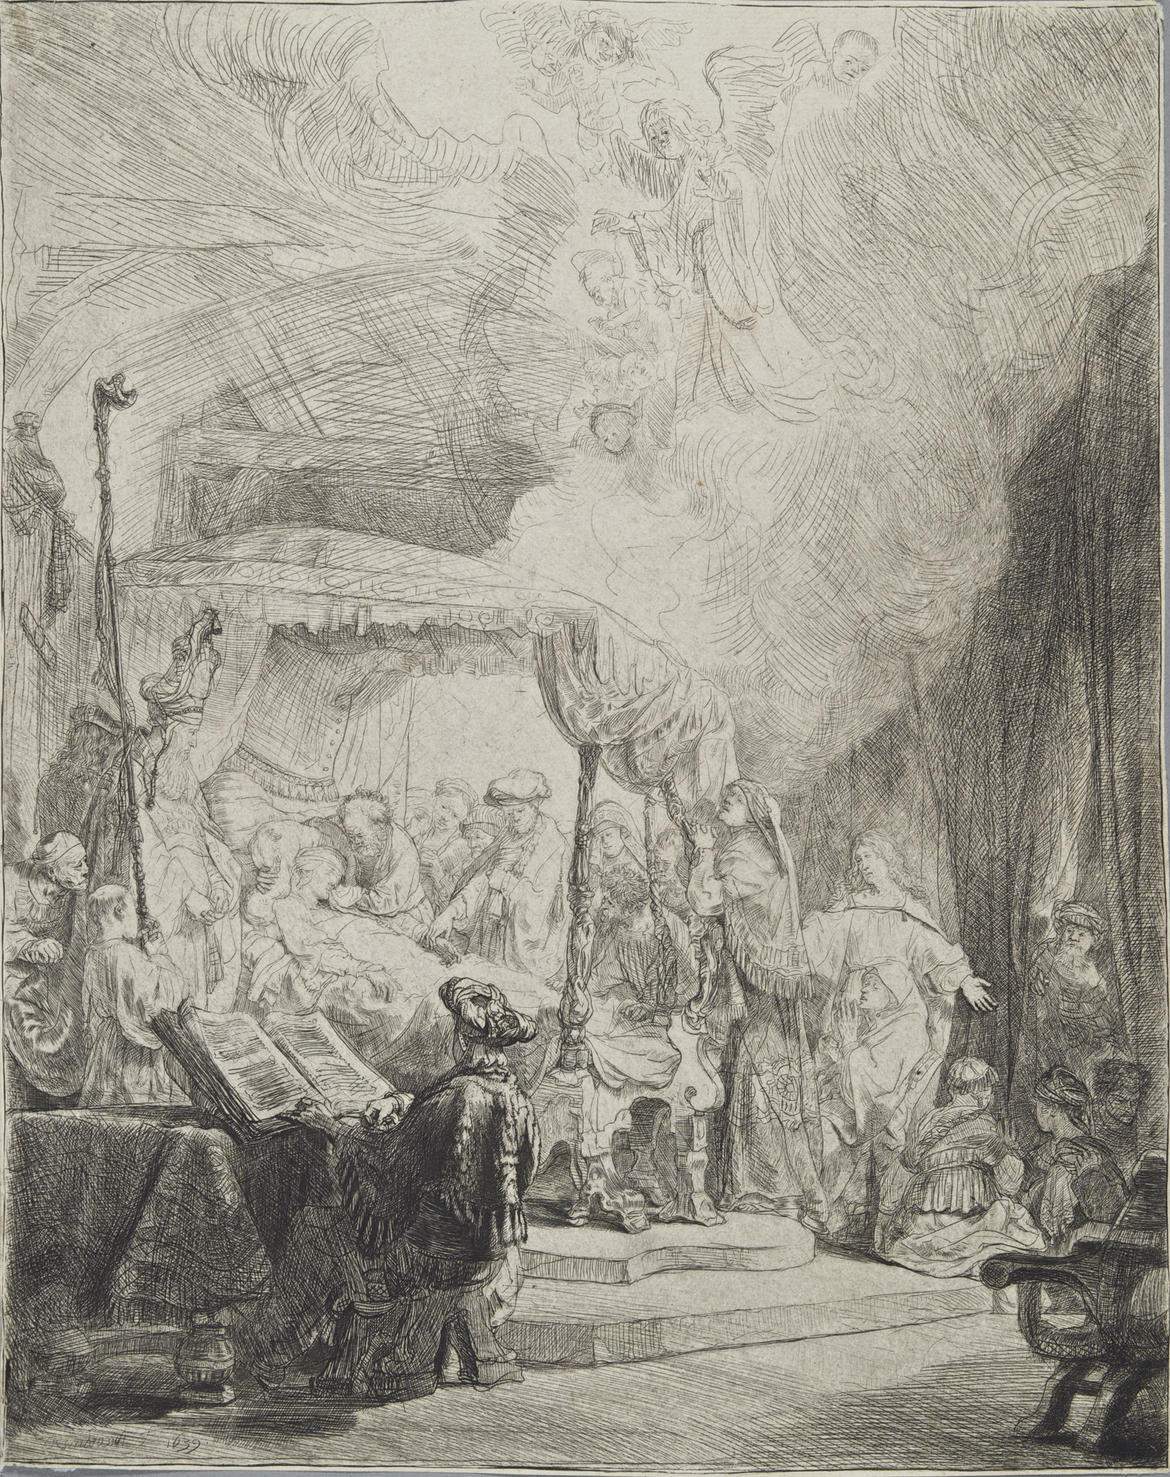 A Trento una mostra illustra l'opera grafica di Rembrandt attraverso una collezione trentina